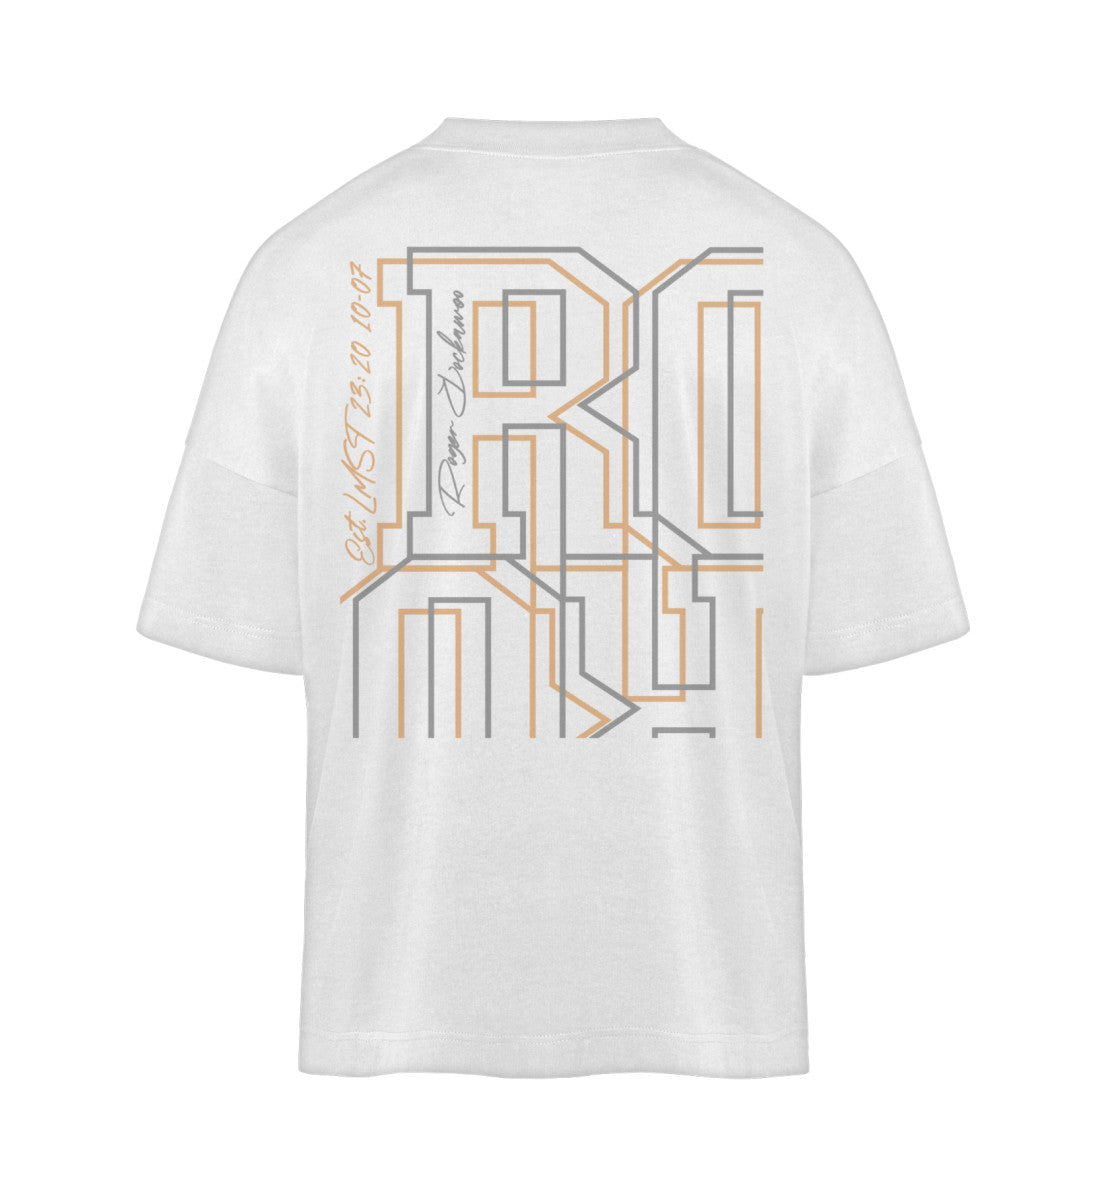 Weißes T-Shirt Unisex Oversize Fit für Frauen und Männer bedruckt mit dem Design der Roger Rockawoo Kollektion Mountainbike Downhill is no sabotage